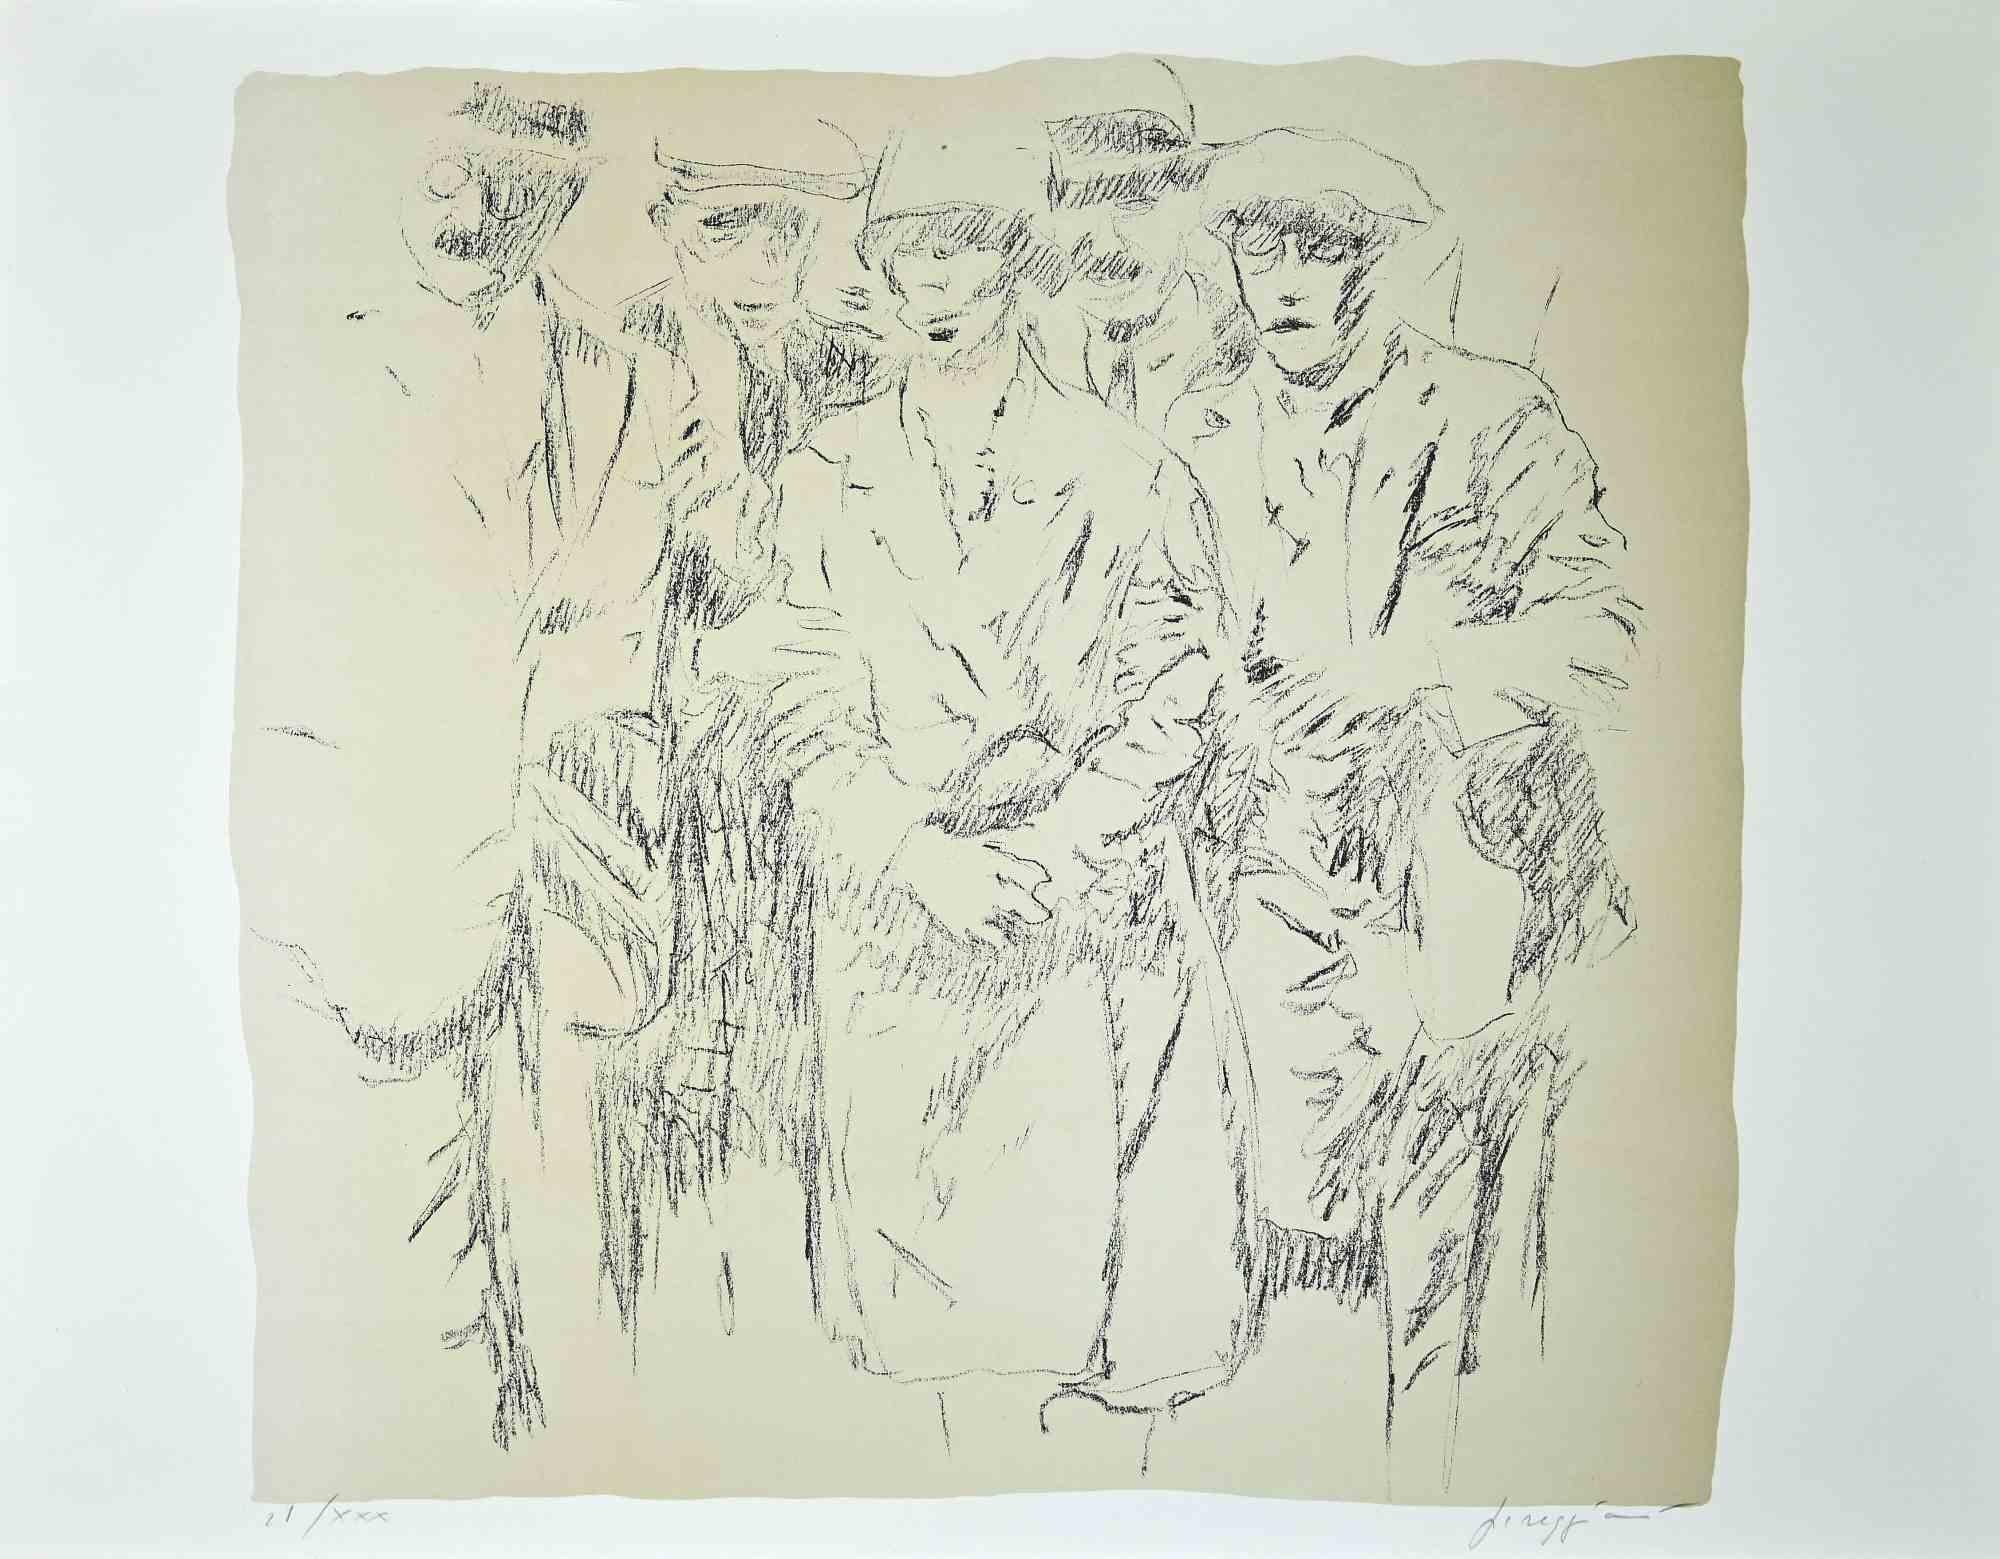 Derrière le patron se trouve une œuvre d'Art Contemporary réalisée par l'artiste italien Pino Reggiani (Forlì, 1937).

Lithographie sur papier.

Signé à la main au crayon par l'artiste dans le coin inférieur droit : Reggiani. Numéroté au crayon dans